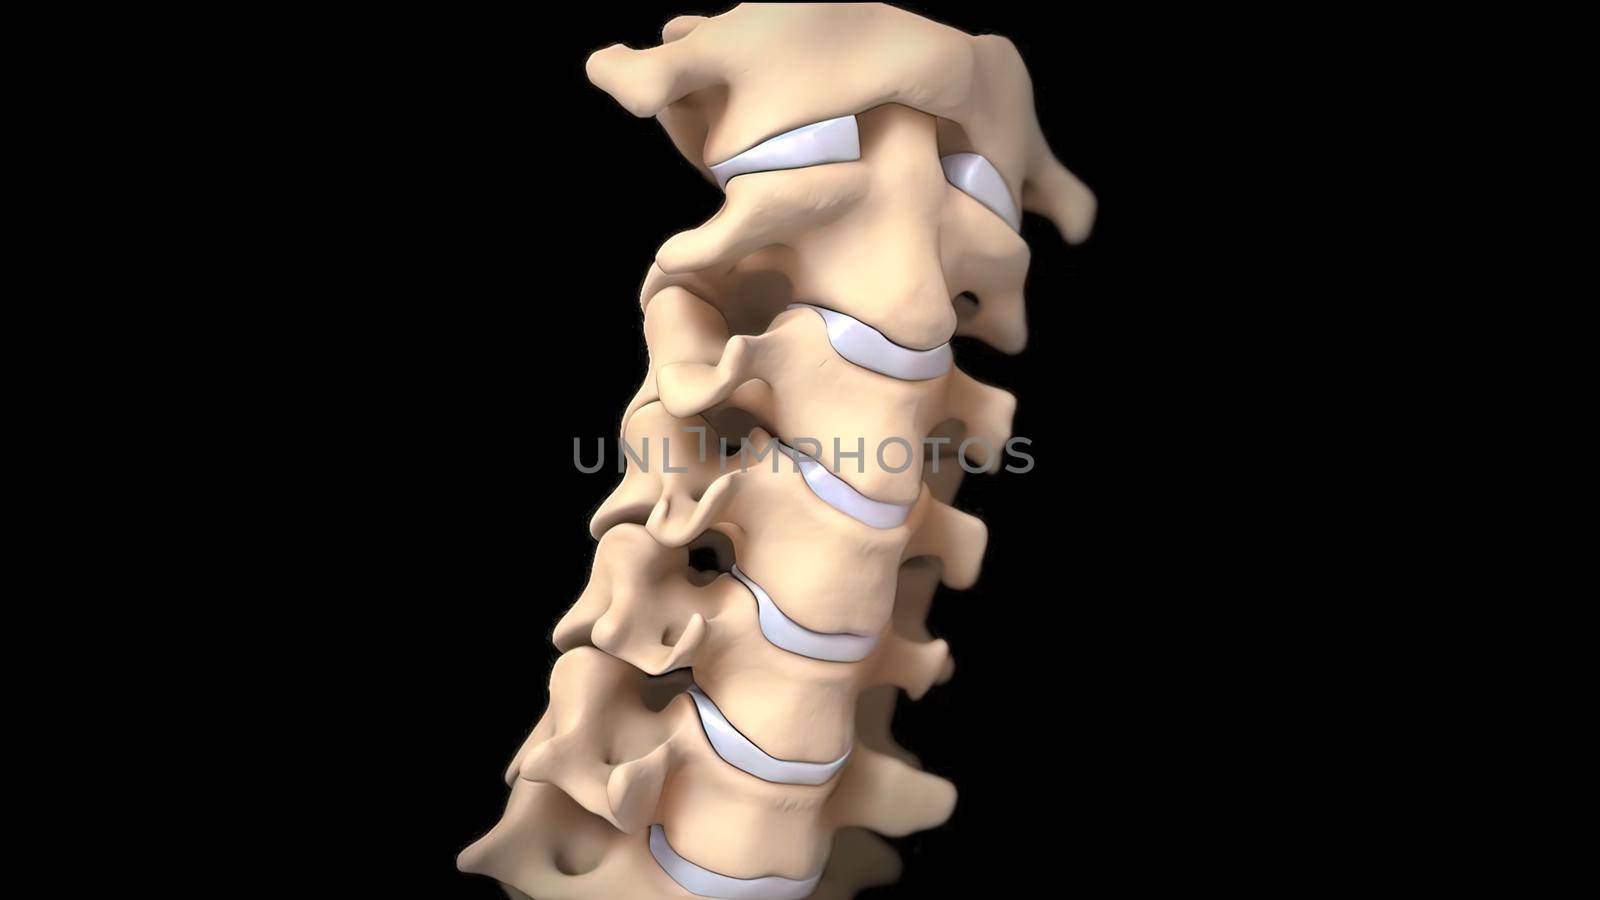 3D medical illustration of cervical spine on black background by creativepic